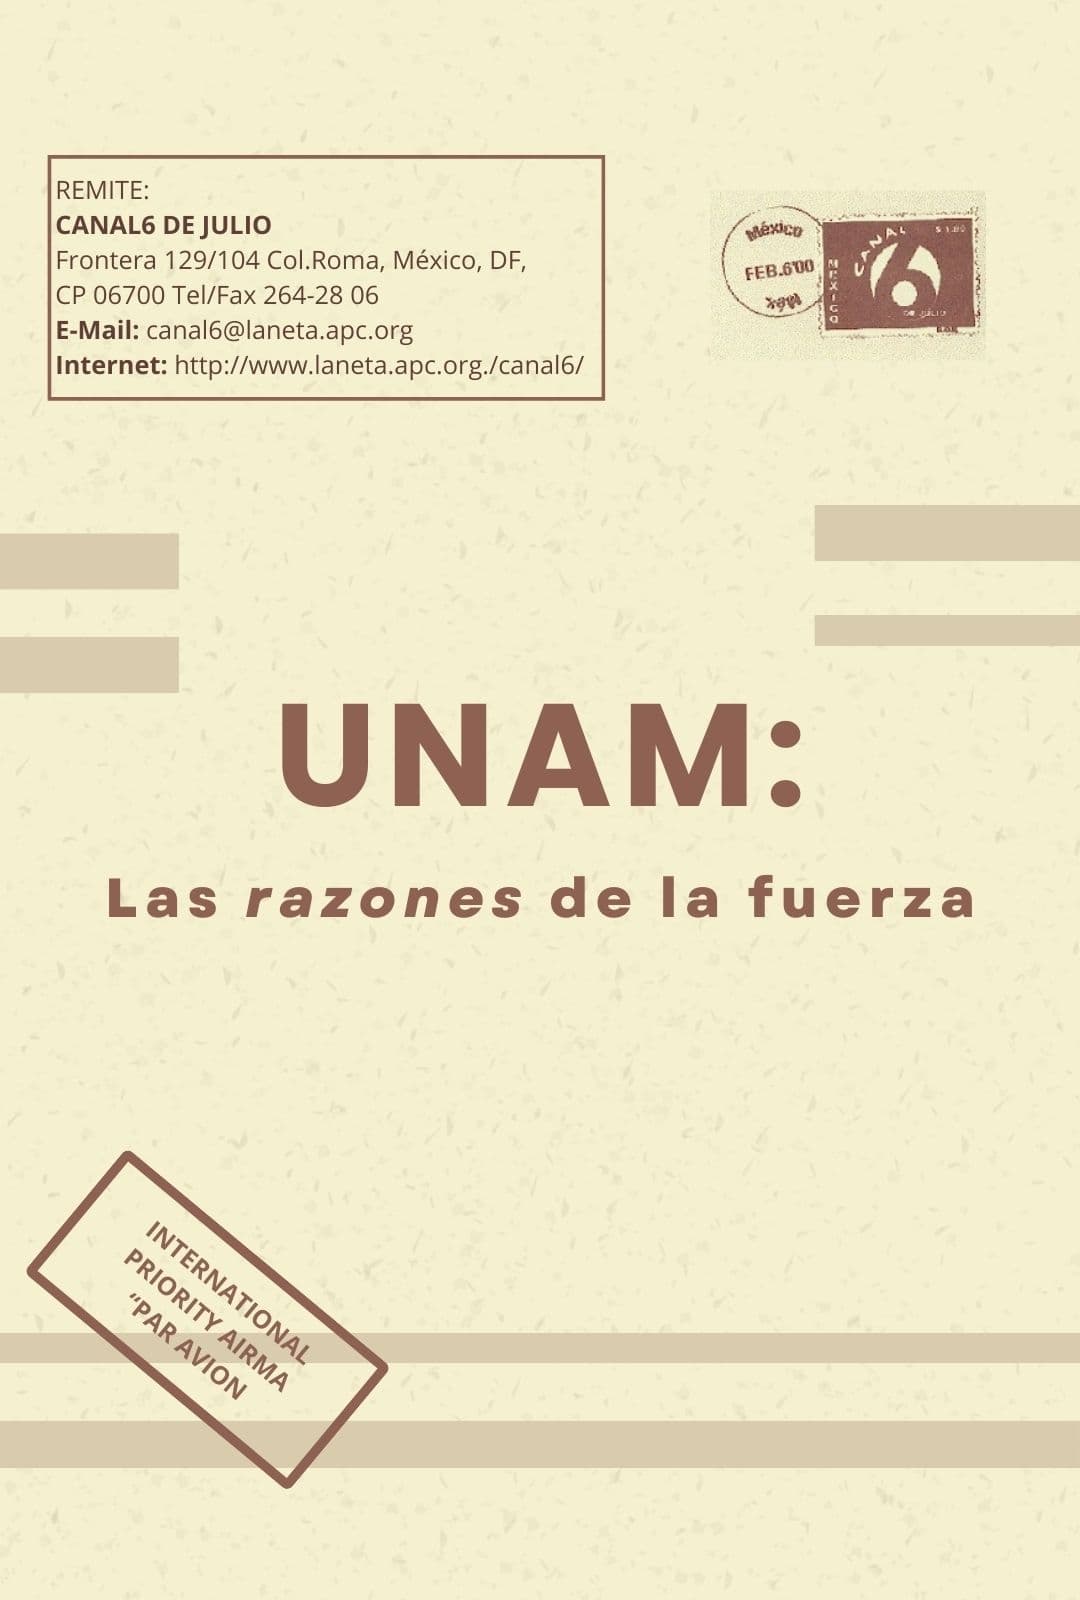 UNAM: Las razones de la fuerza